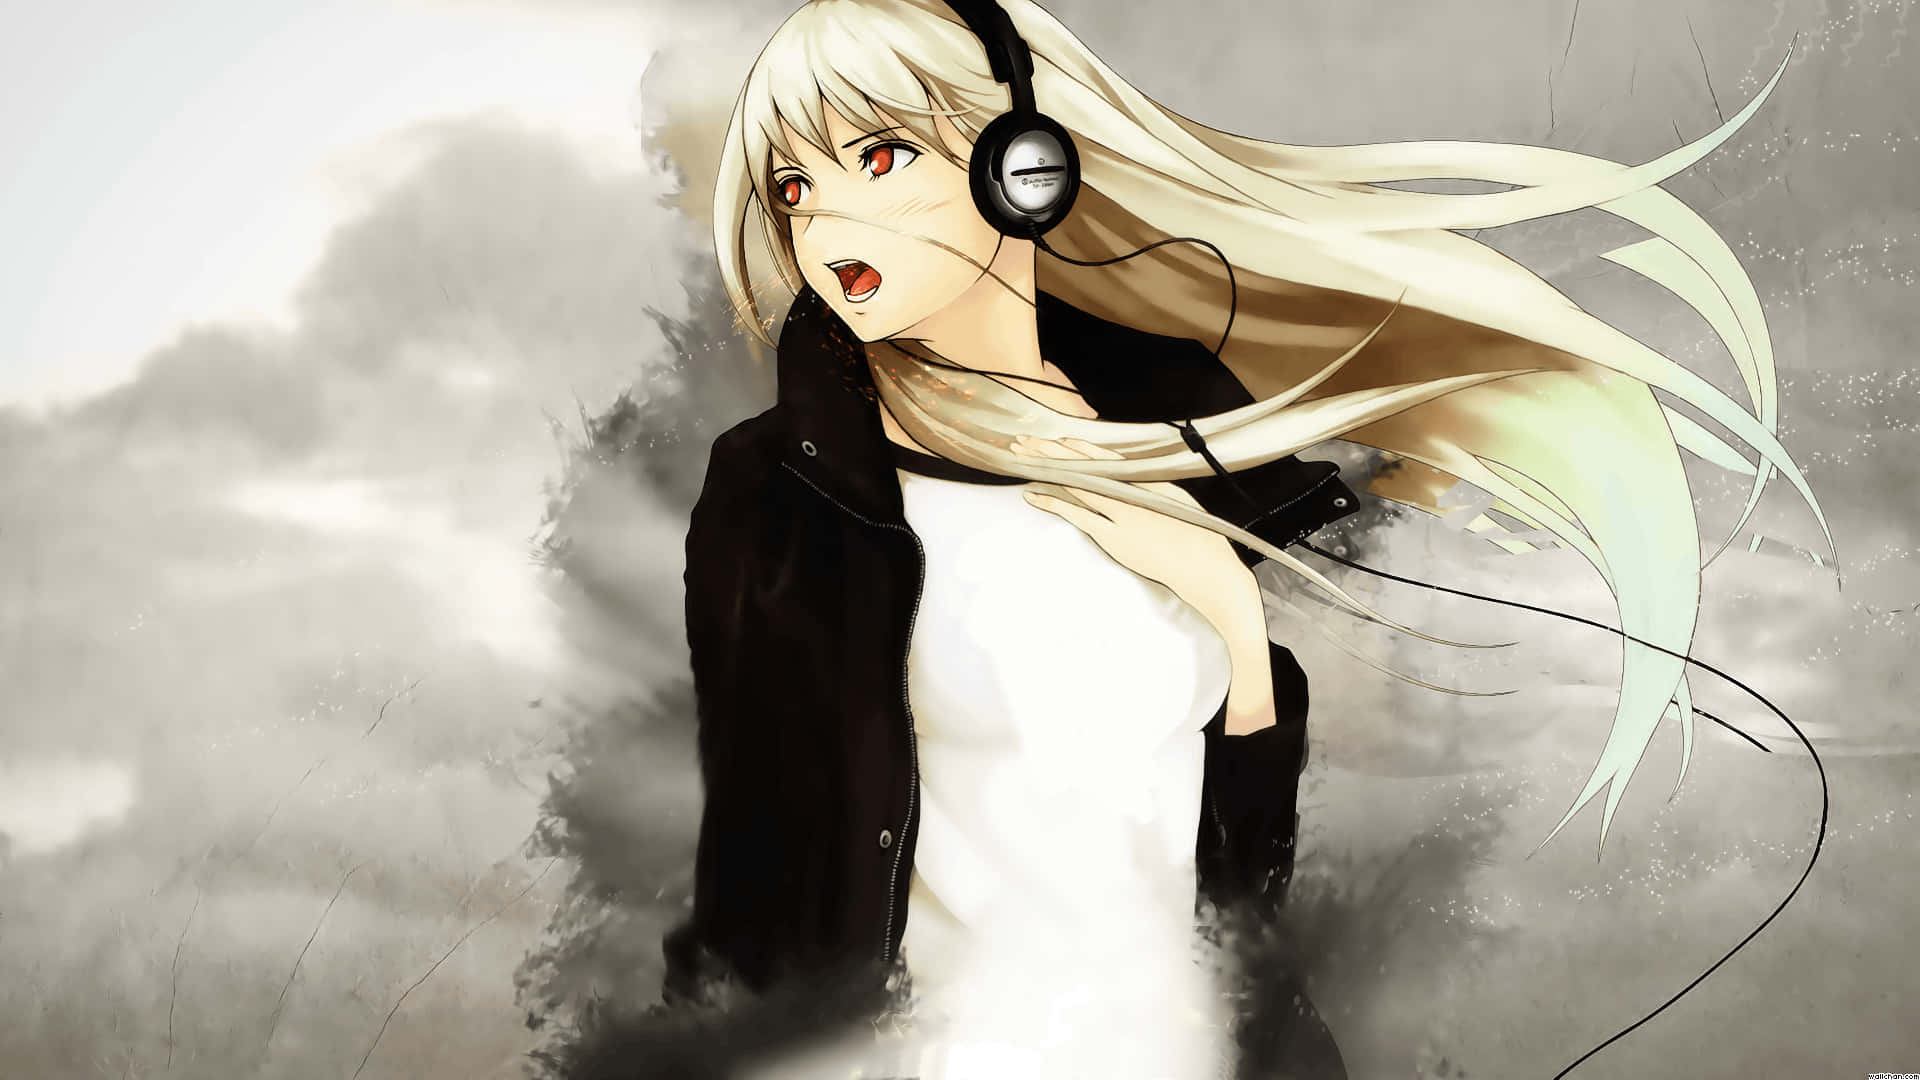 Good Anime Girl Headphones For Songs Background